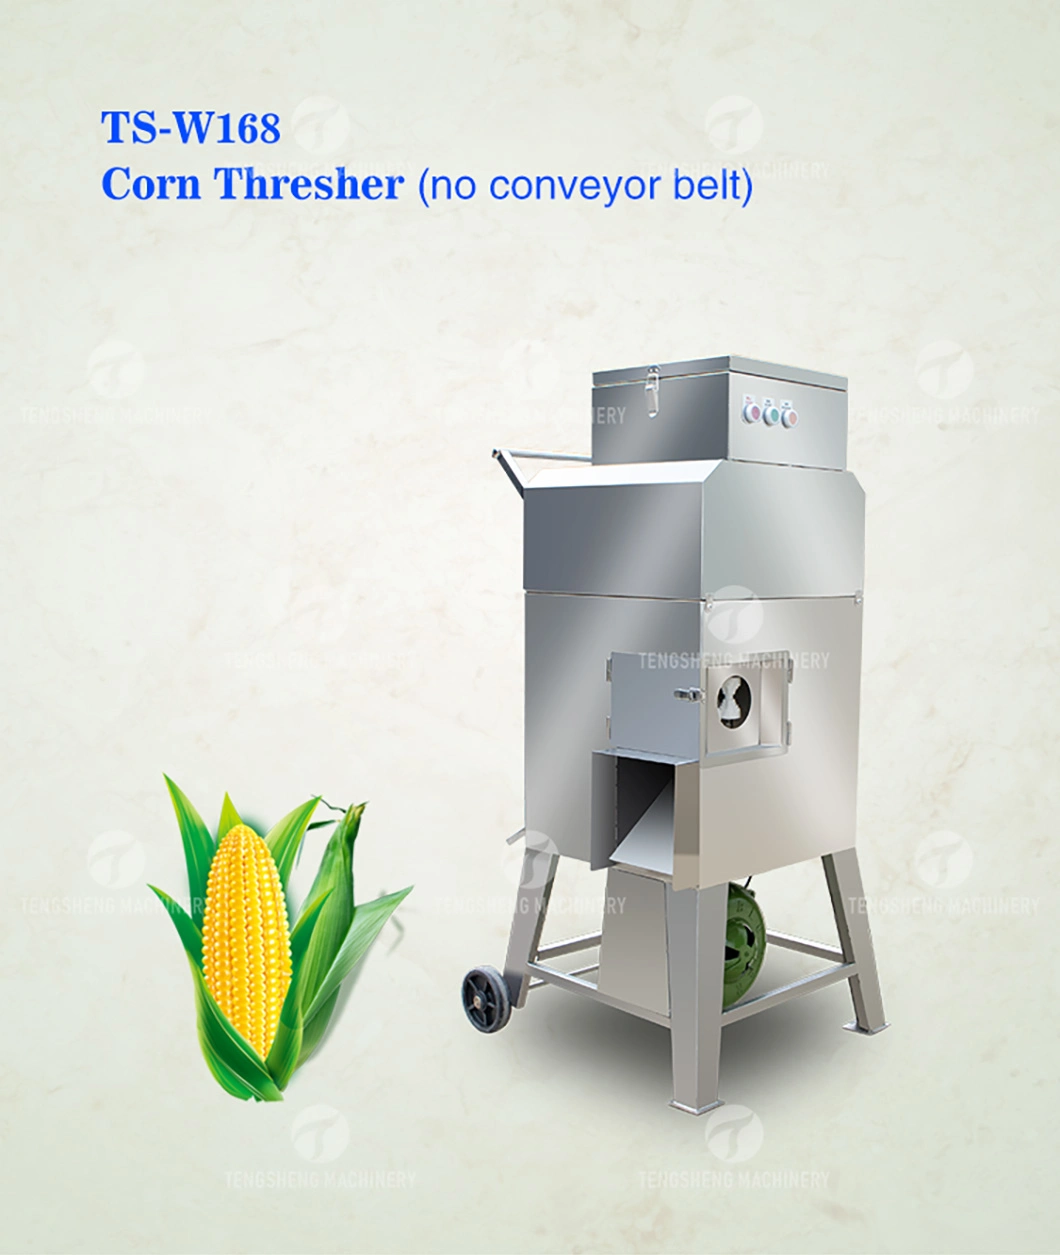 Corn Threshing Equipment Stainless Steel Fresh Corn Threshing Machine Agricultural Machinery Sweet Corn Sheller (TS-W168)